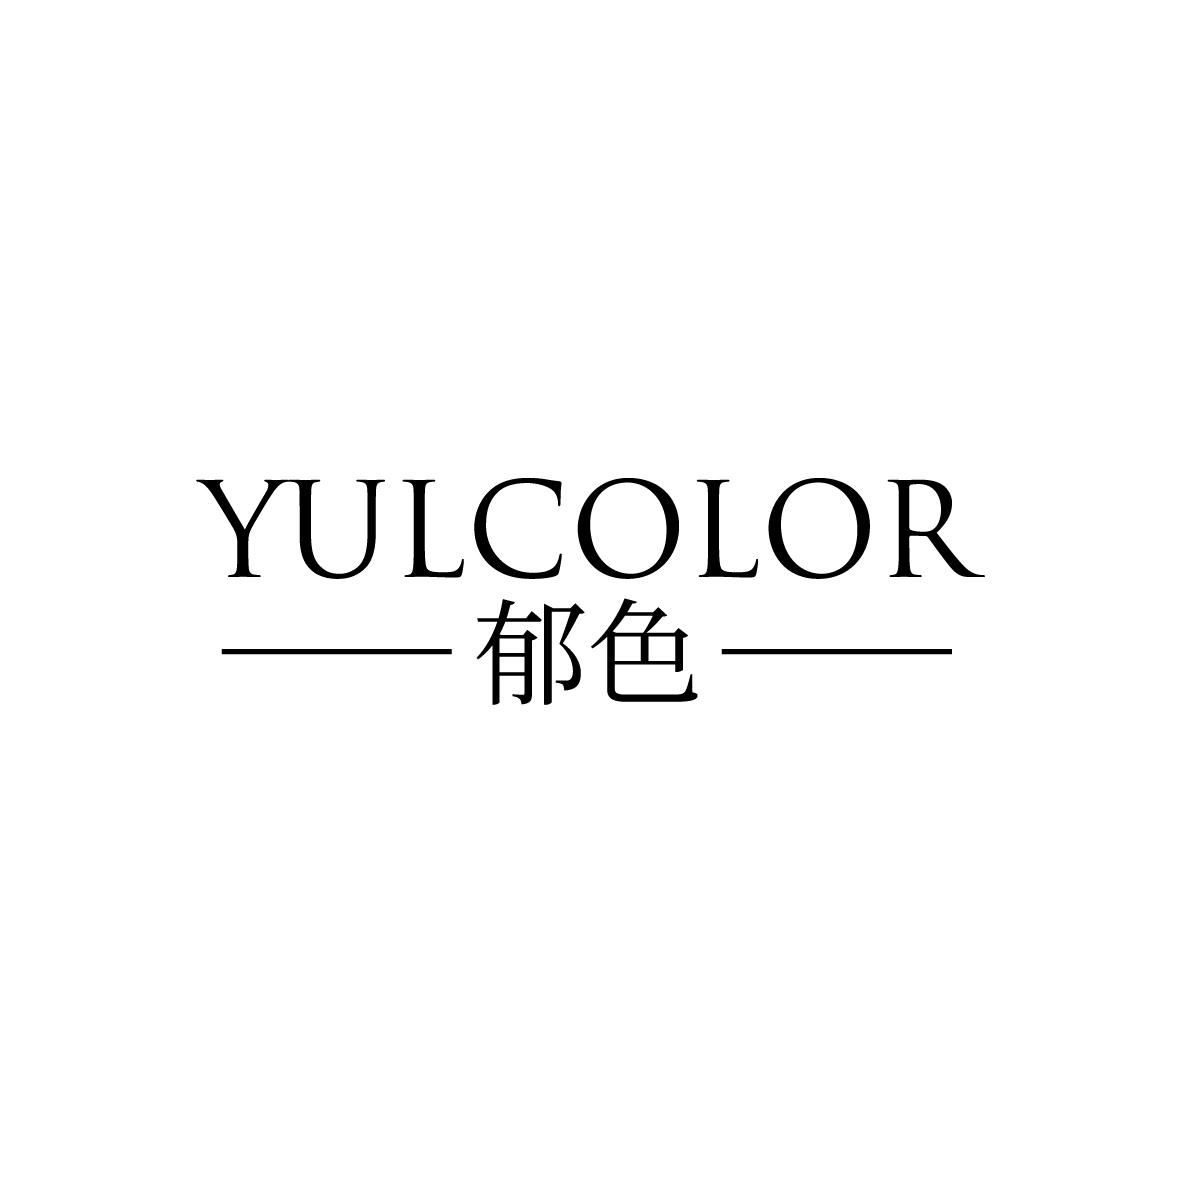 郁色 YULCOLOR